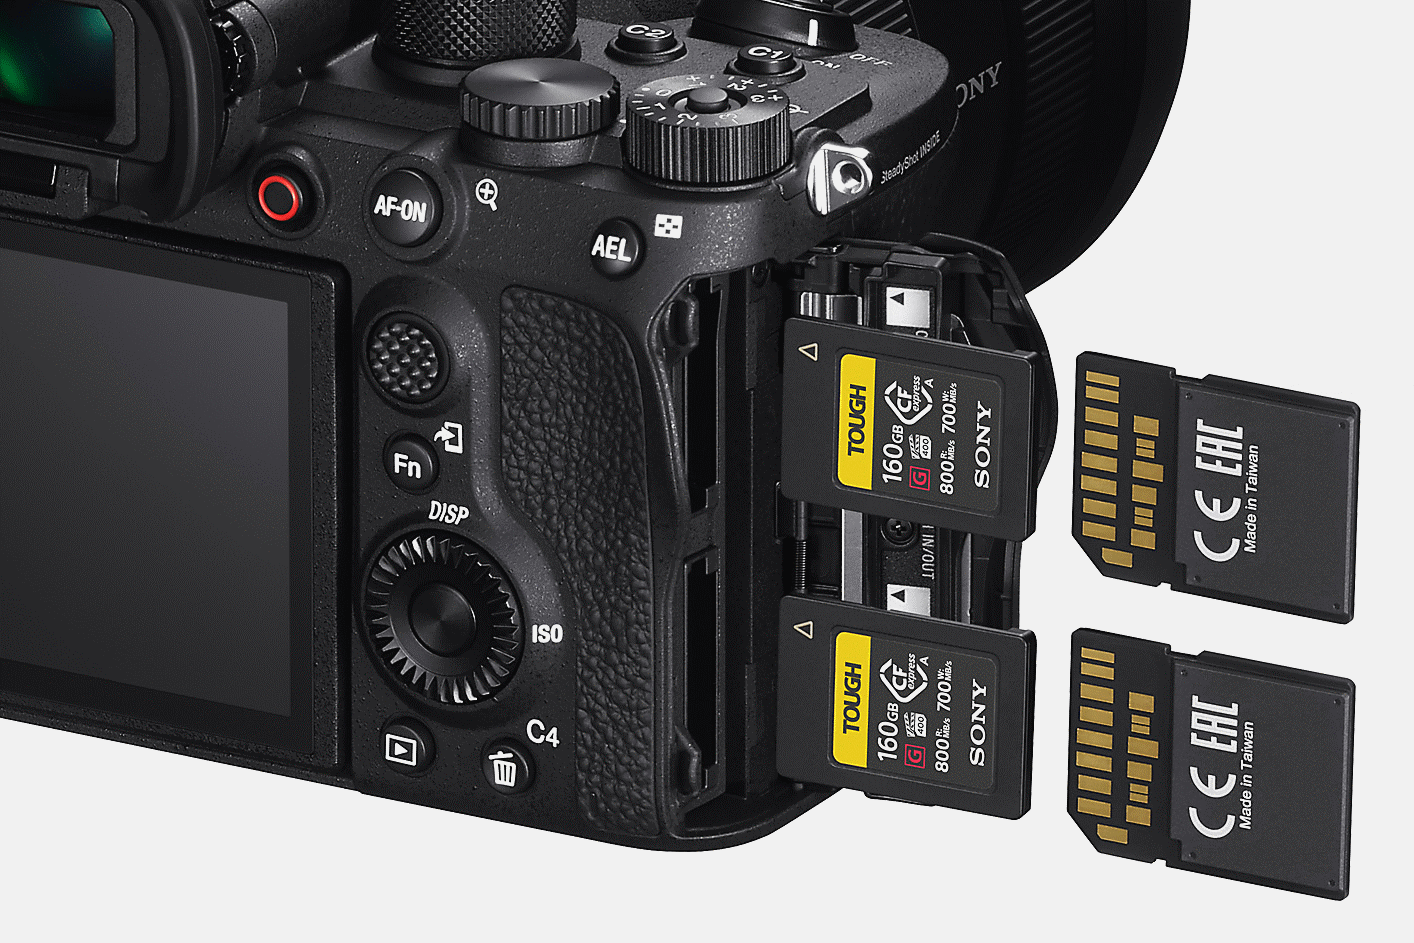 容納兩張 SD 記憶卡的相機後視圖